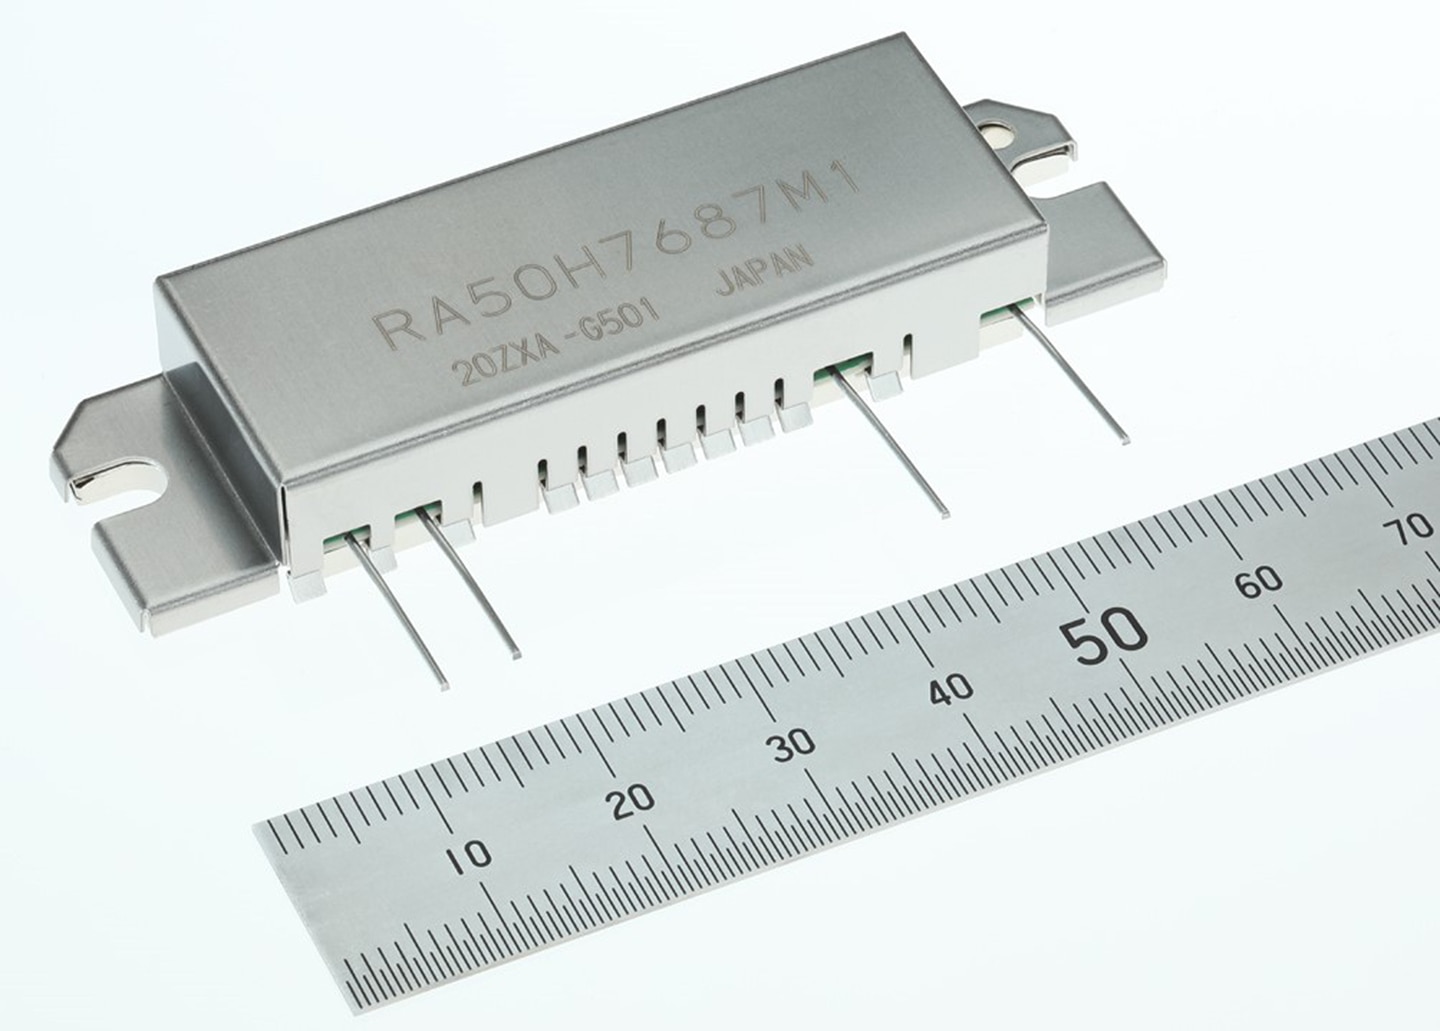 Silicon RF High-power MOSFET Module (RA50H7687M1)